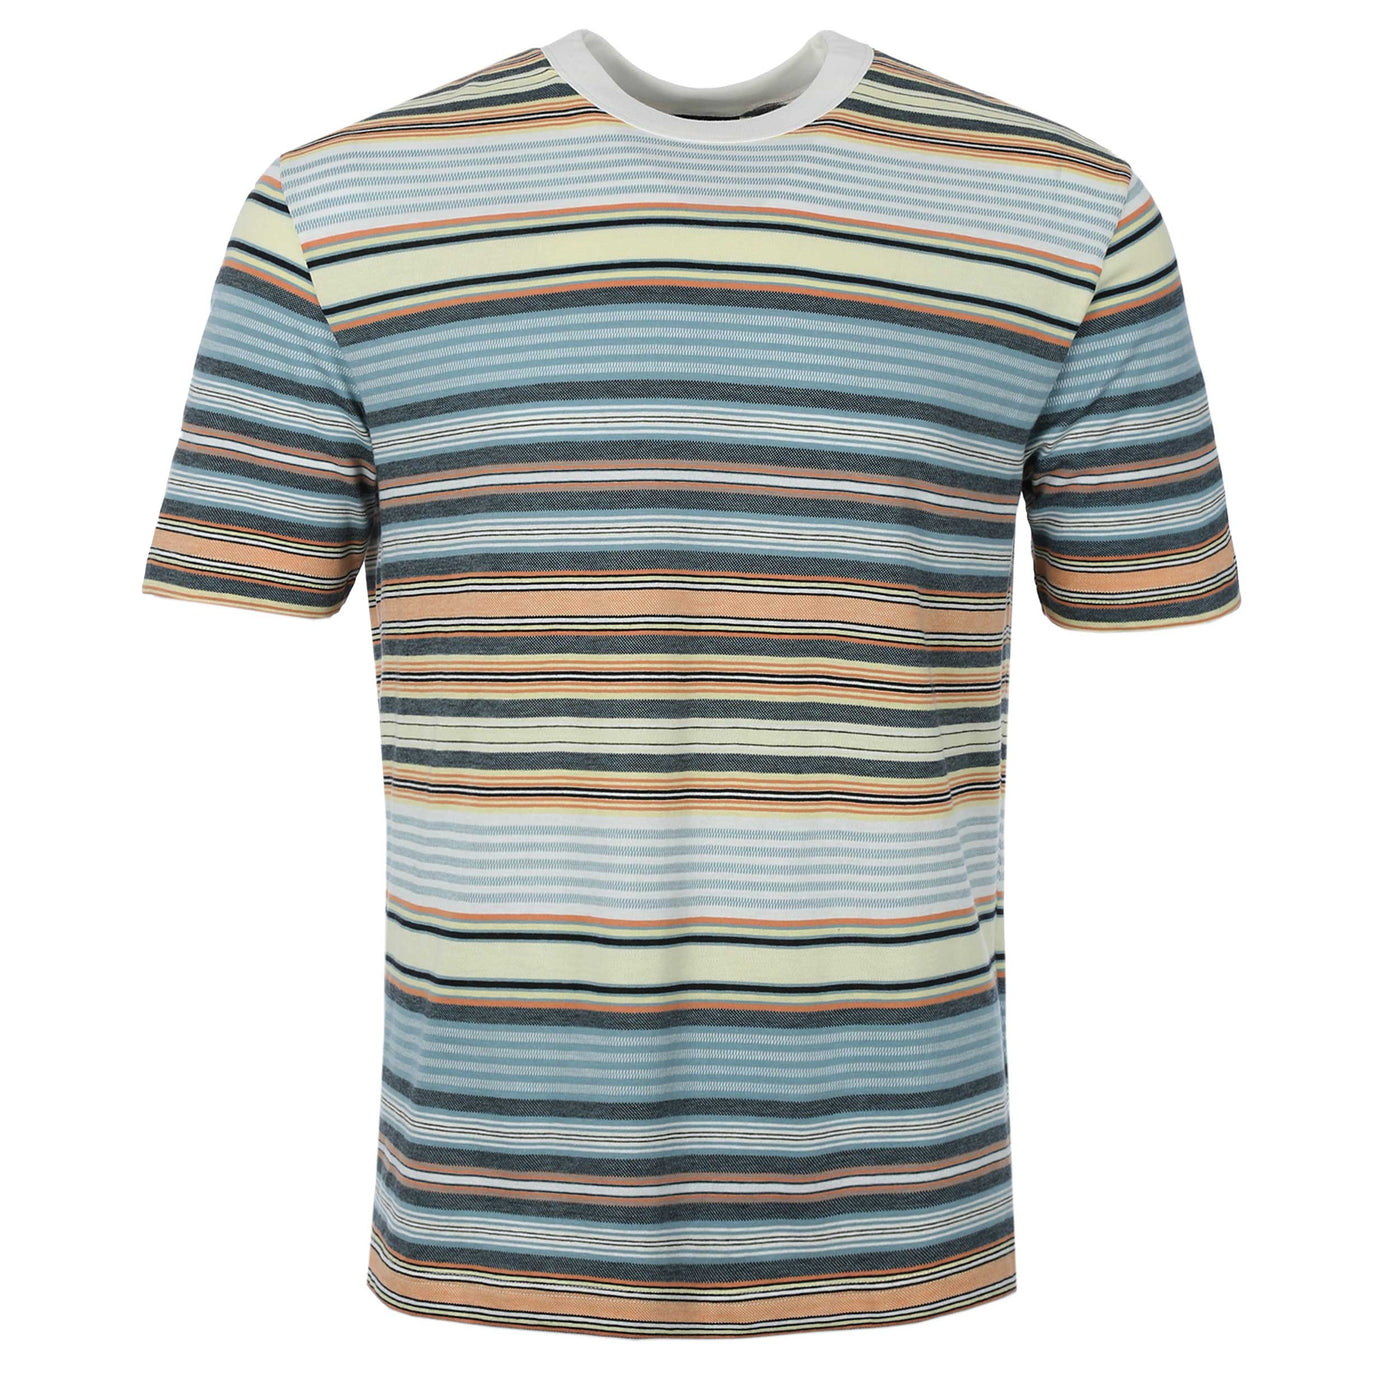 Paul Smith Stripe T Shirt in Multi